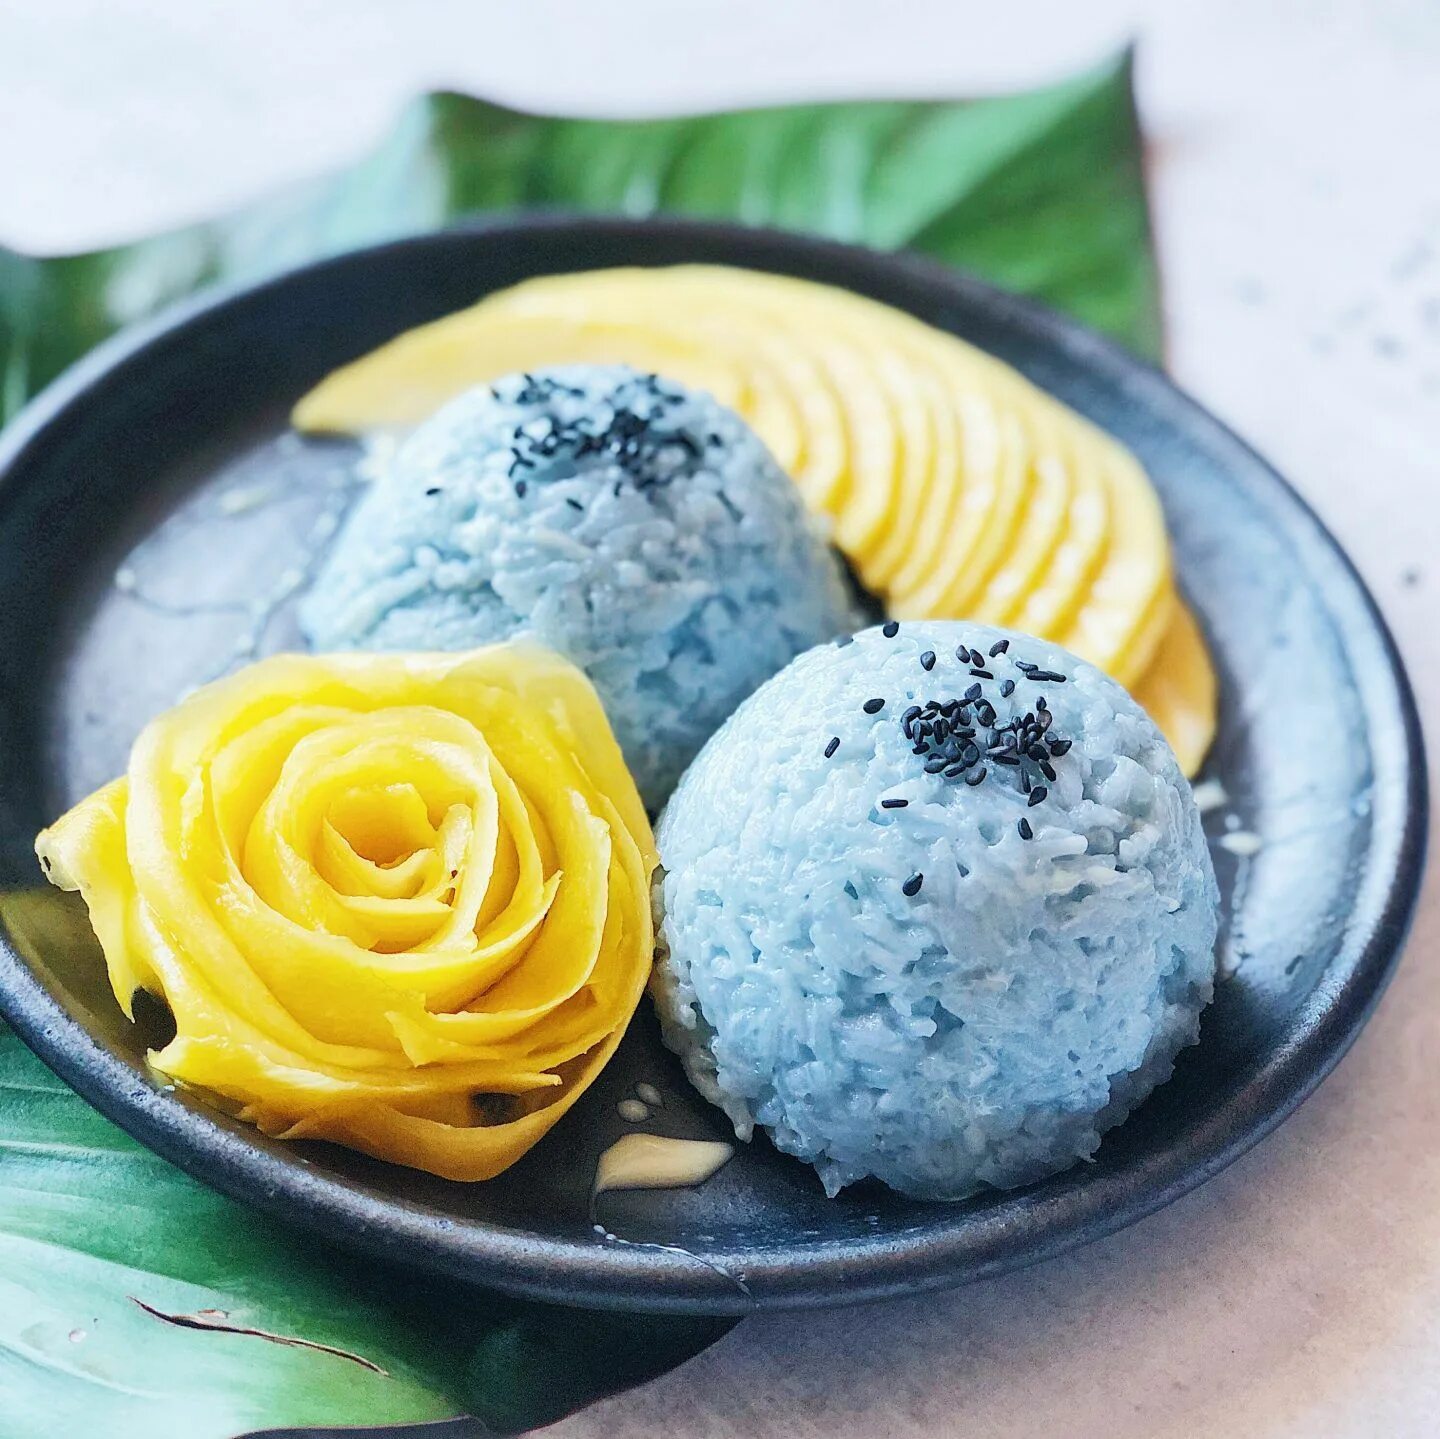 Blue rice. Манго с рисом голубым. Синий рис. Thai Desserts. Манго и кокосовое молоко.